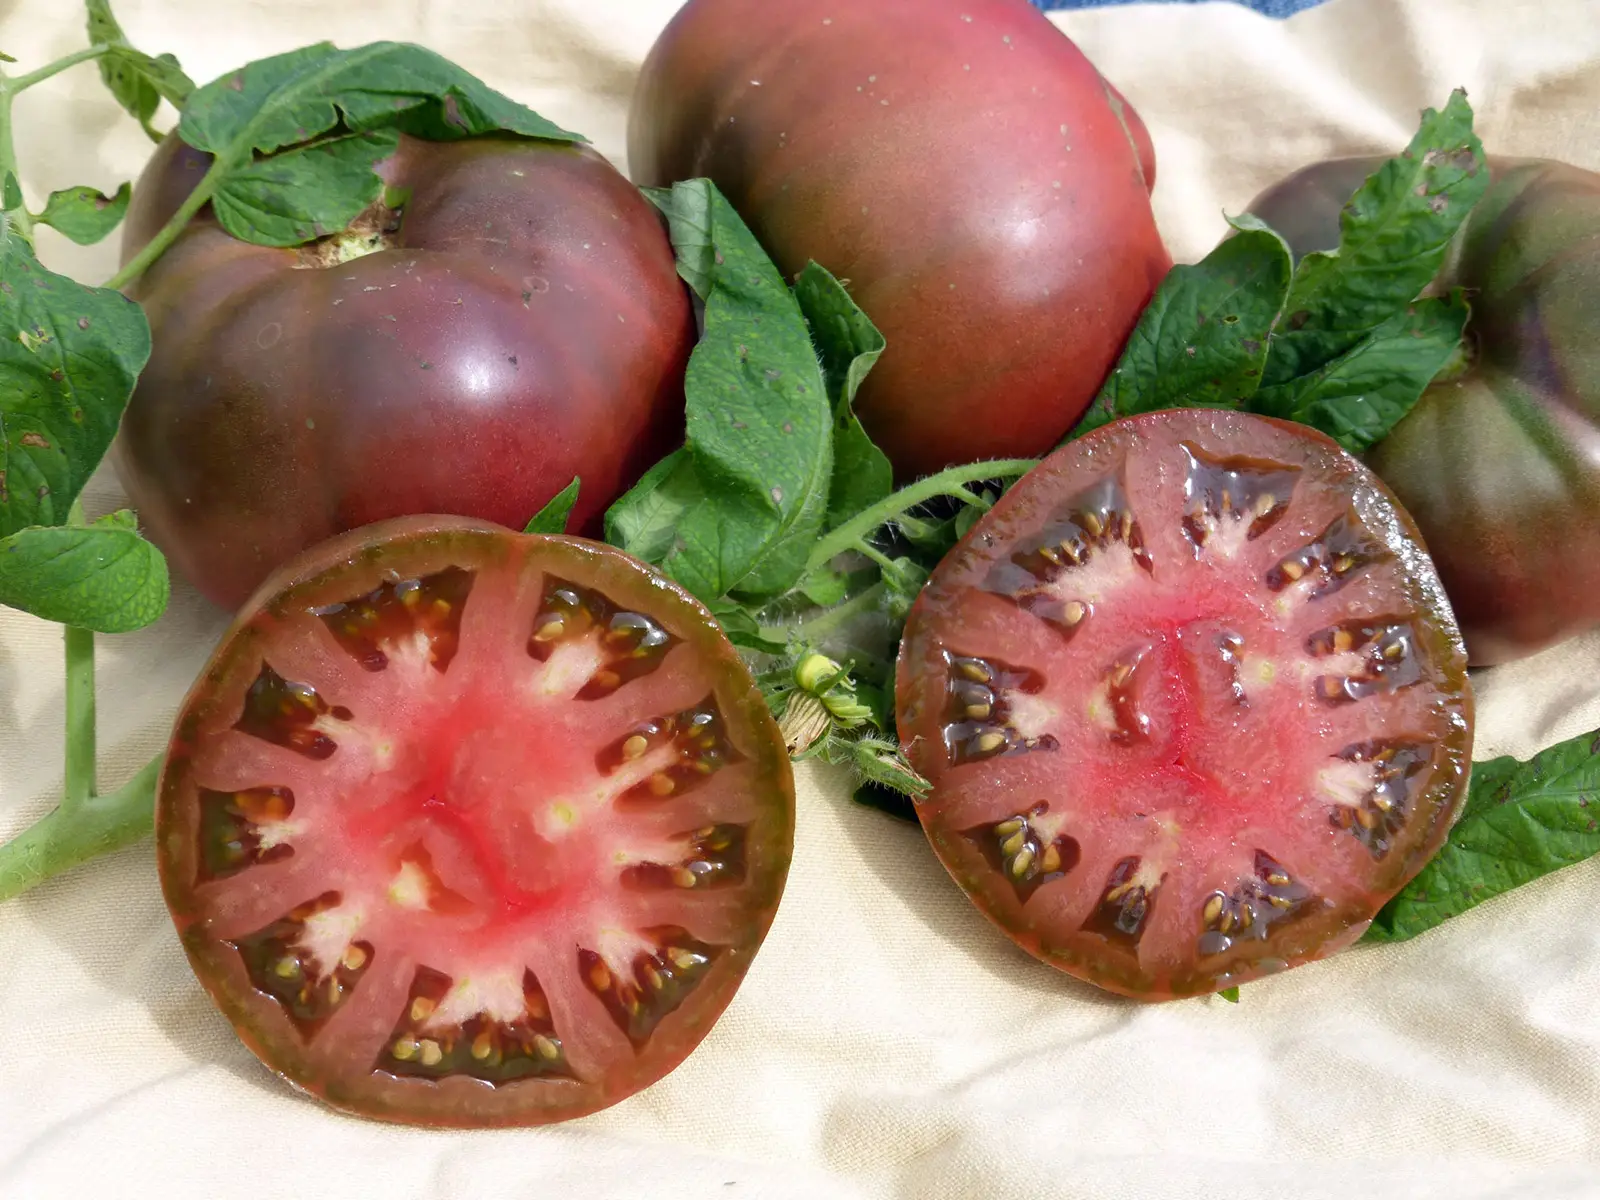 Pomodori neri di Seborga, una tipicità quasi sconosciuta